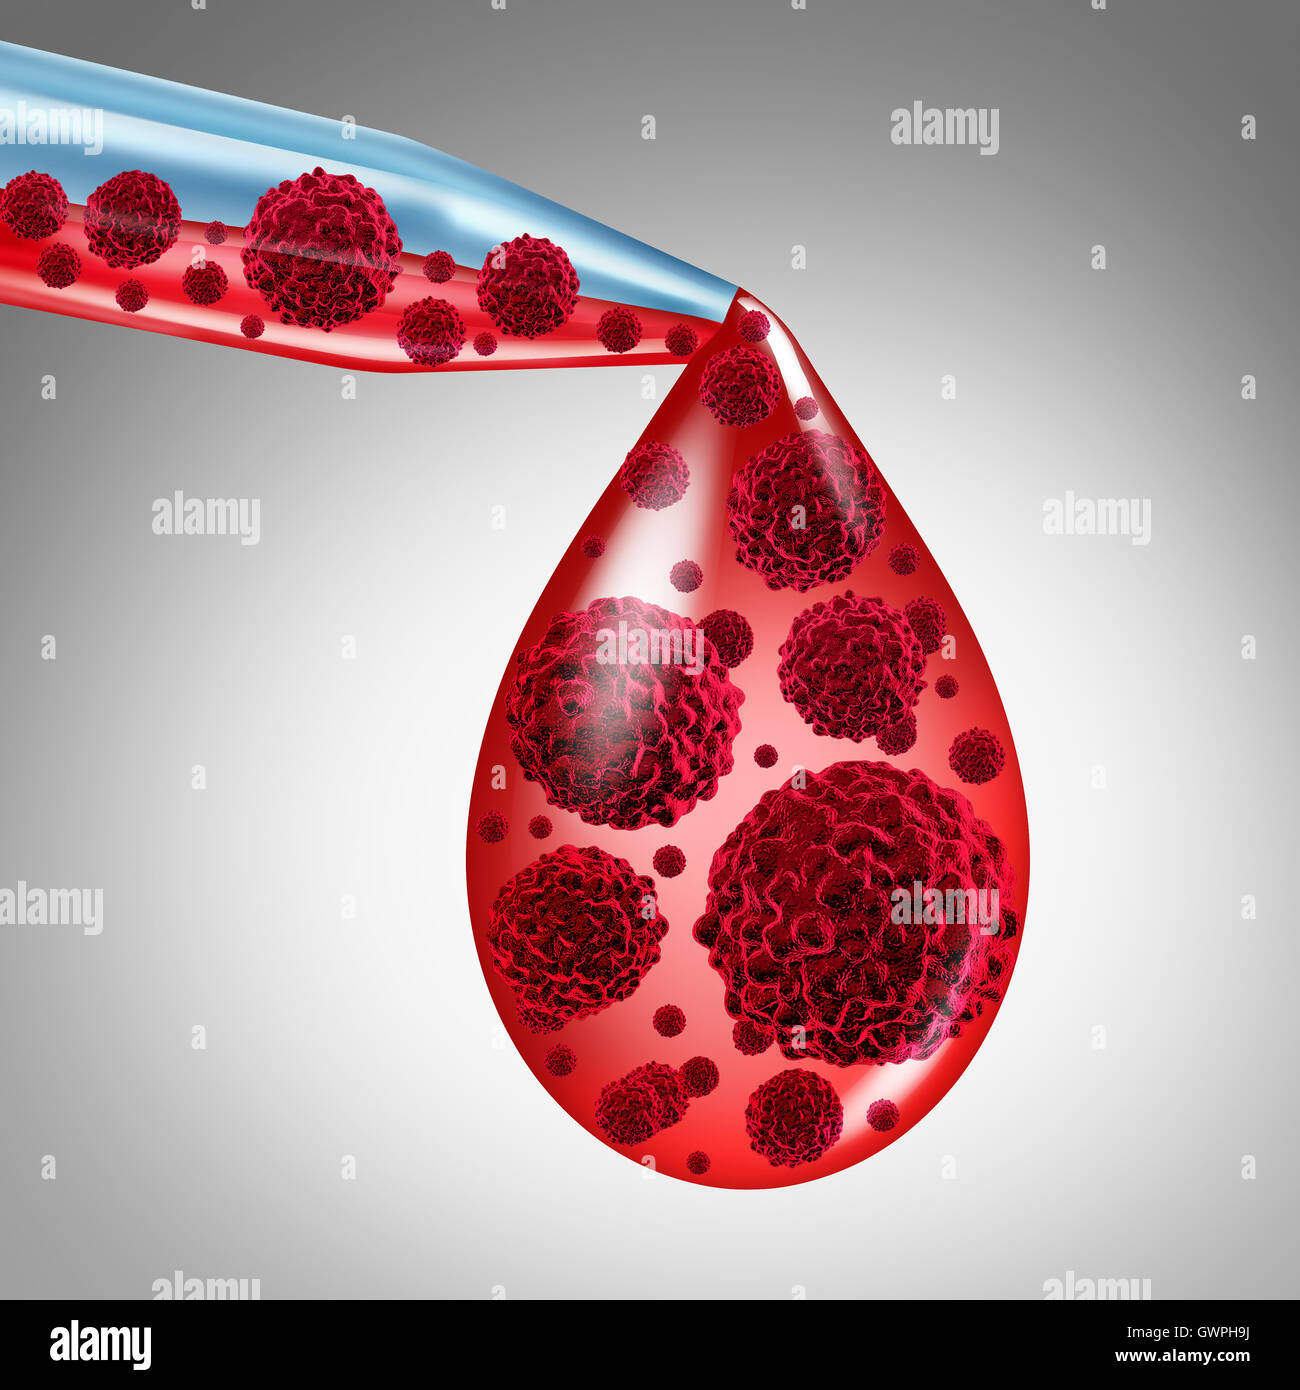 Cancer du sang Diagnostic médical concept comme un compte-gouttes avec du sang infecté par des cellules malignes comme un symbole conceptuel pour les symptômes de la leucémie ou la maladie du sang en 3D illustration. Banque D'Images